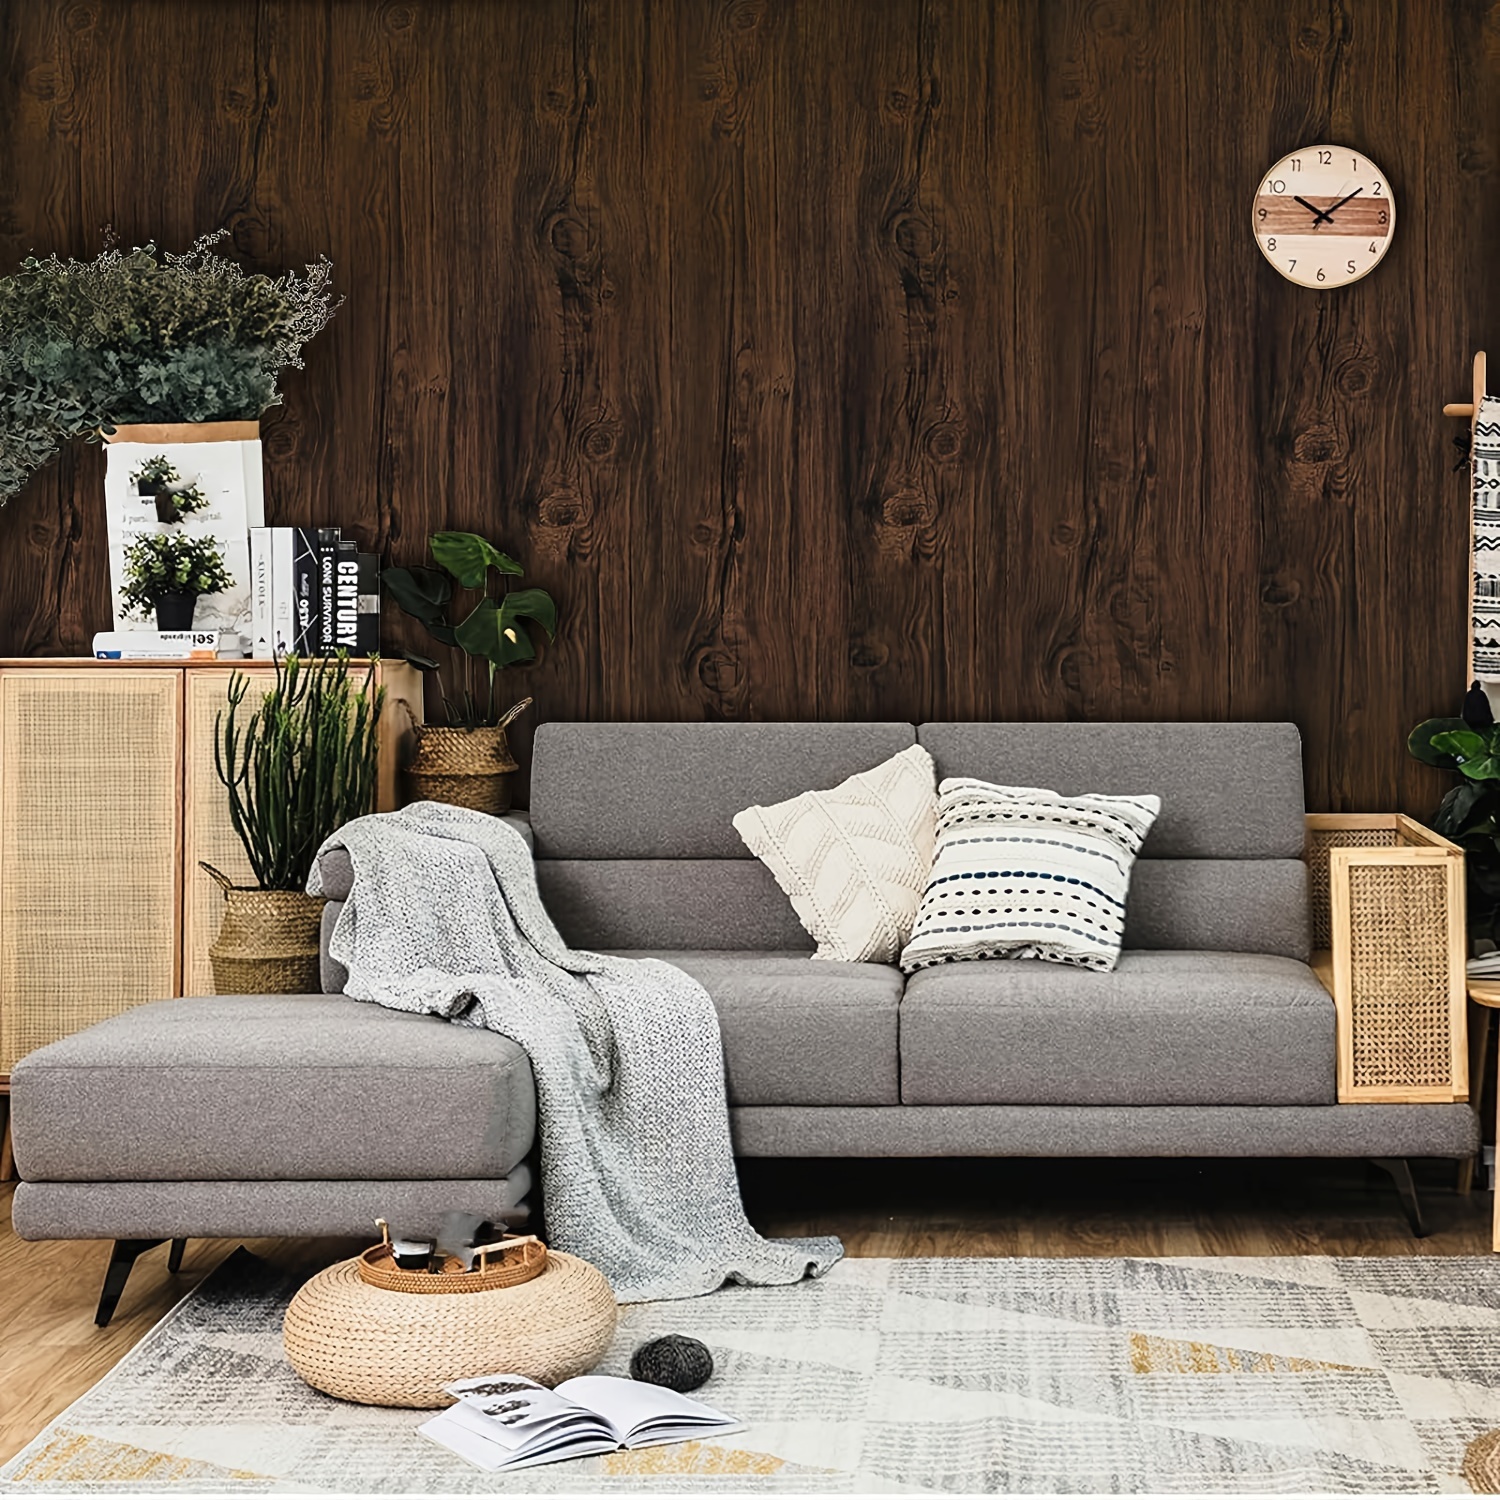  Kanworse - Papel pintado, diseño de madera oscura,  autoadhesivo, adhesivo para pared, diseño de madera, para sala de estar :  Herramientas y Mejoras del Hogar